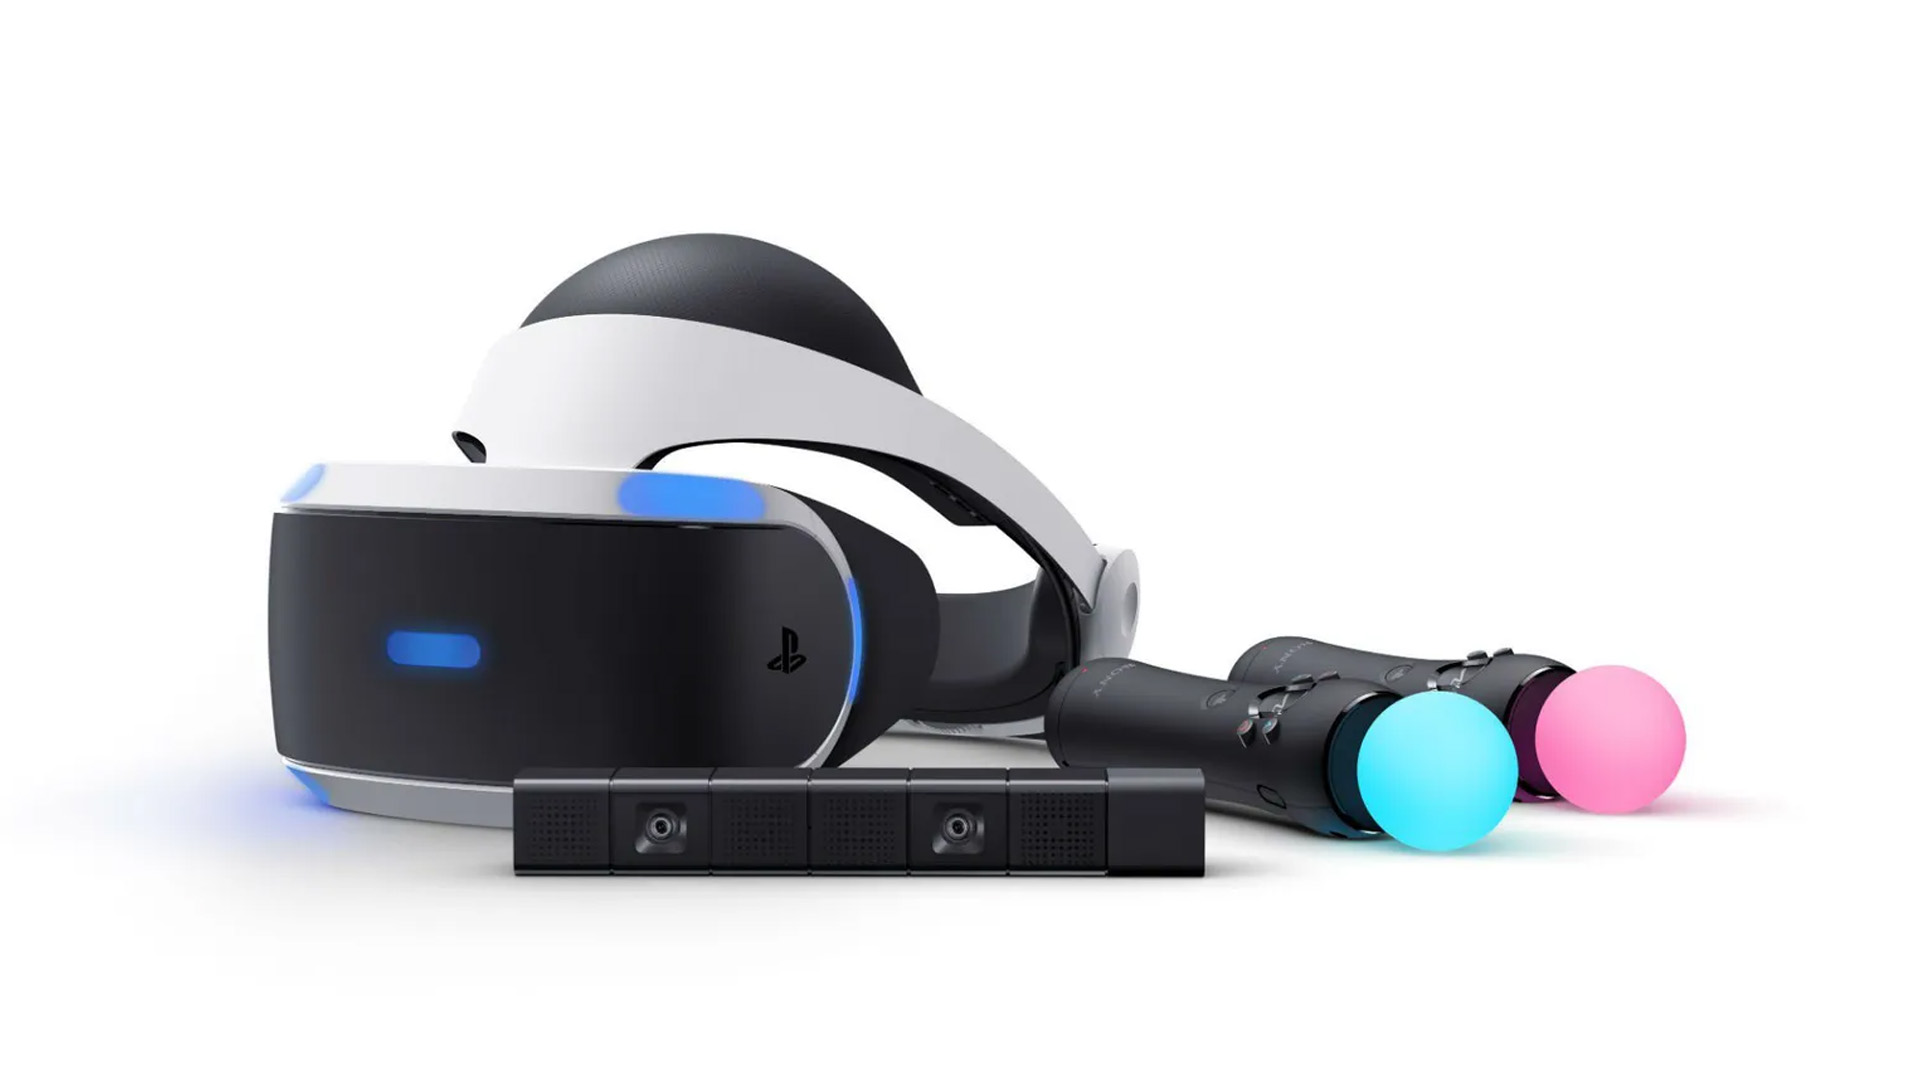 Промо-фото шлема виртуальной реальности PSVR для PS4. 10 лет исполнилось PlayStation 4